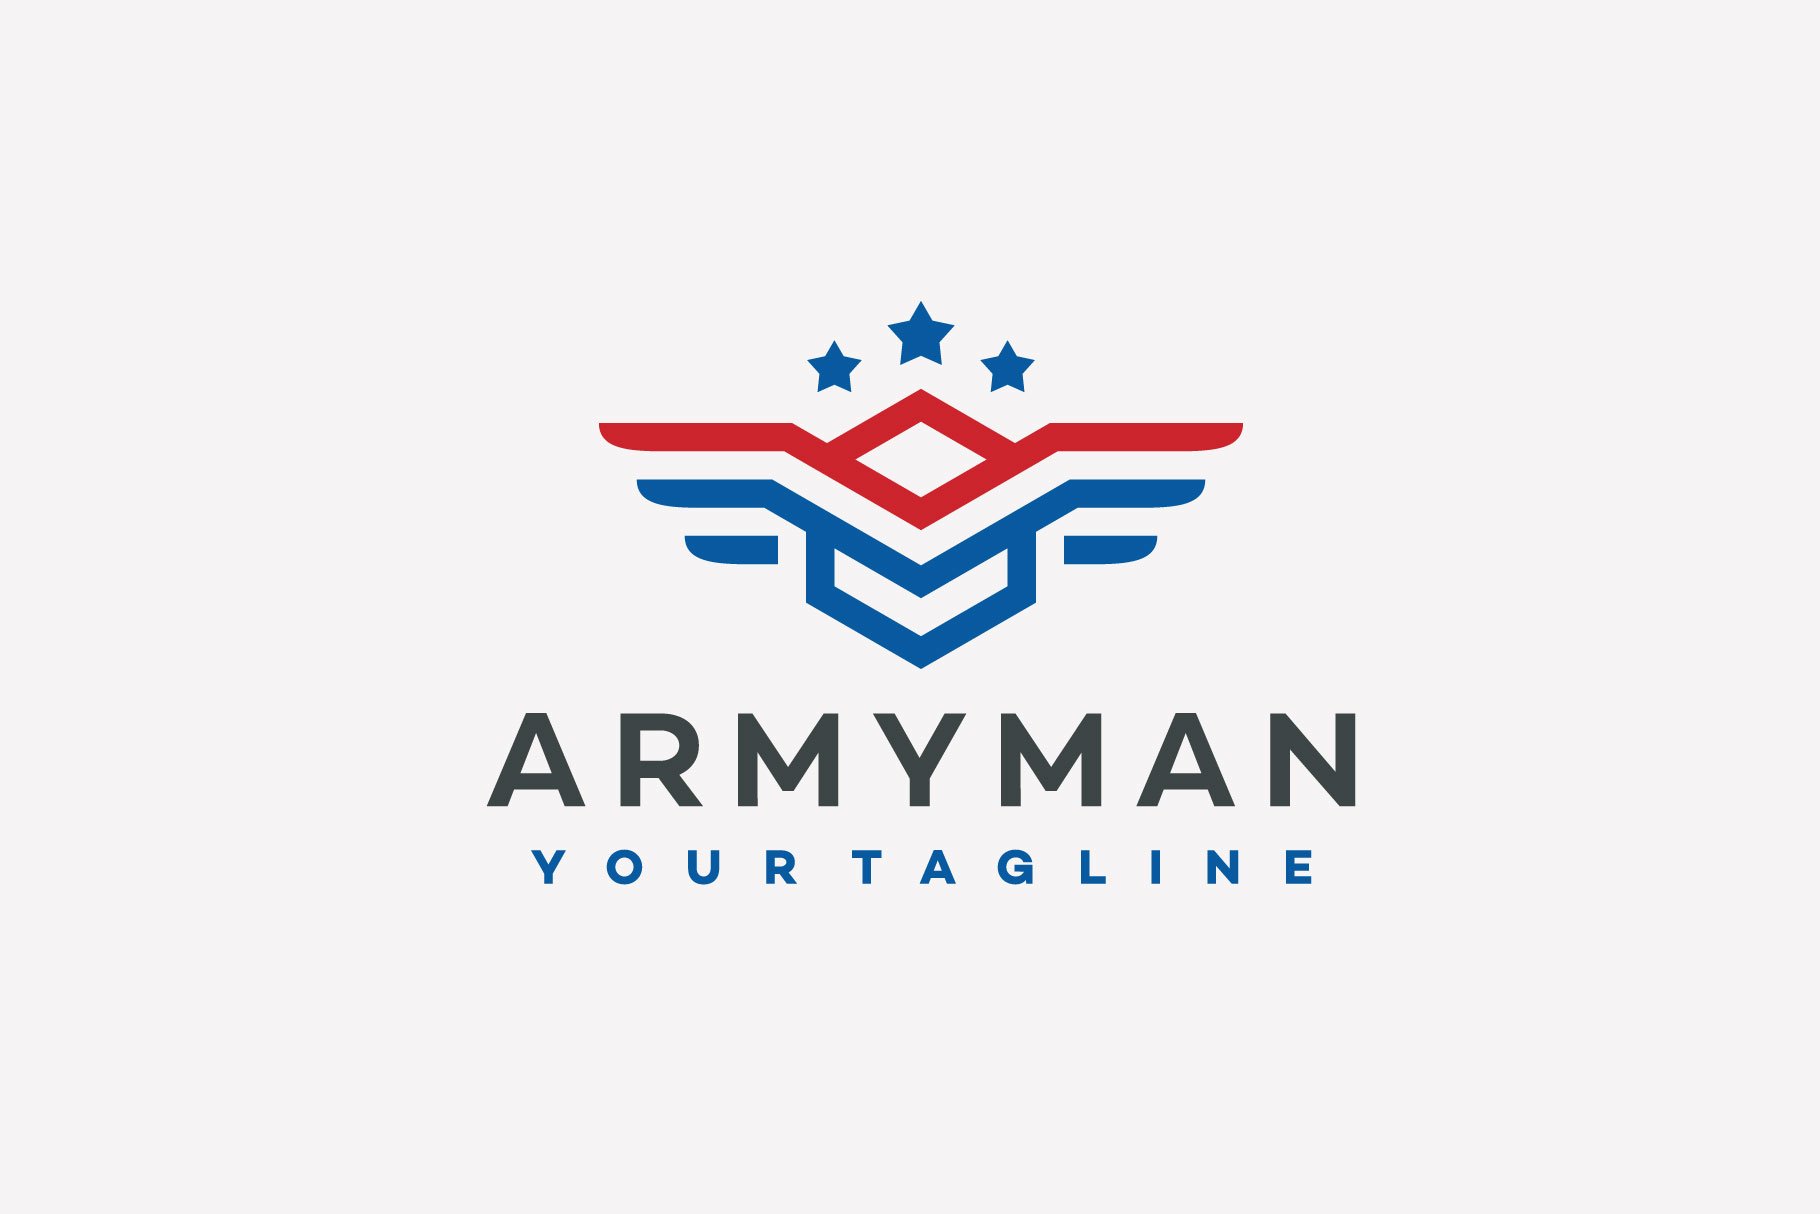 Premium Military Logo Design cover image.